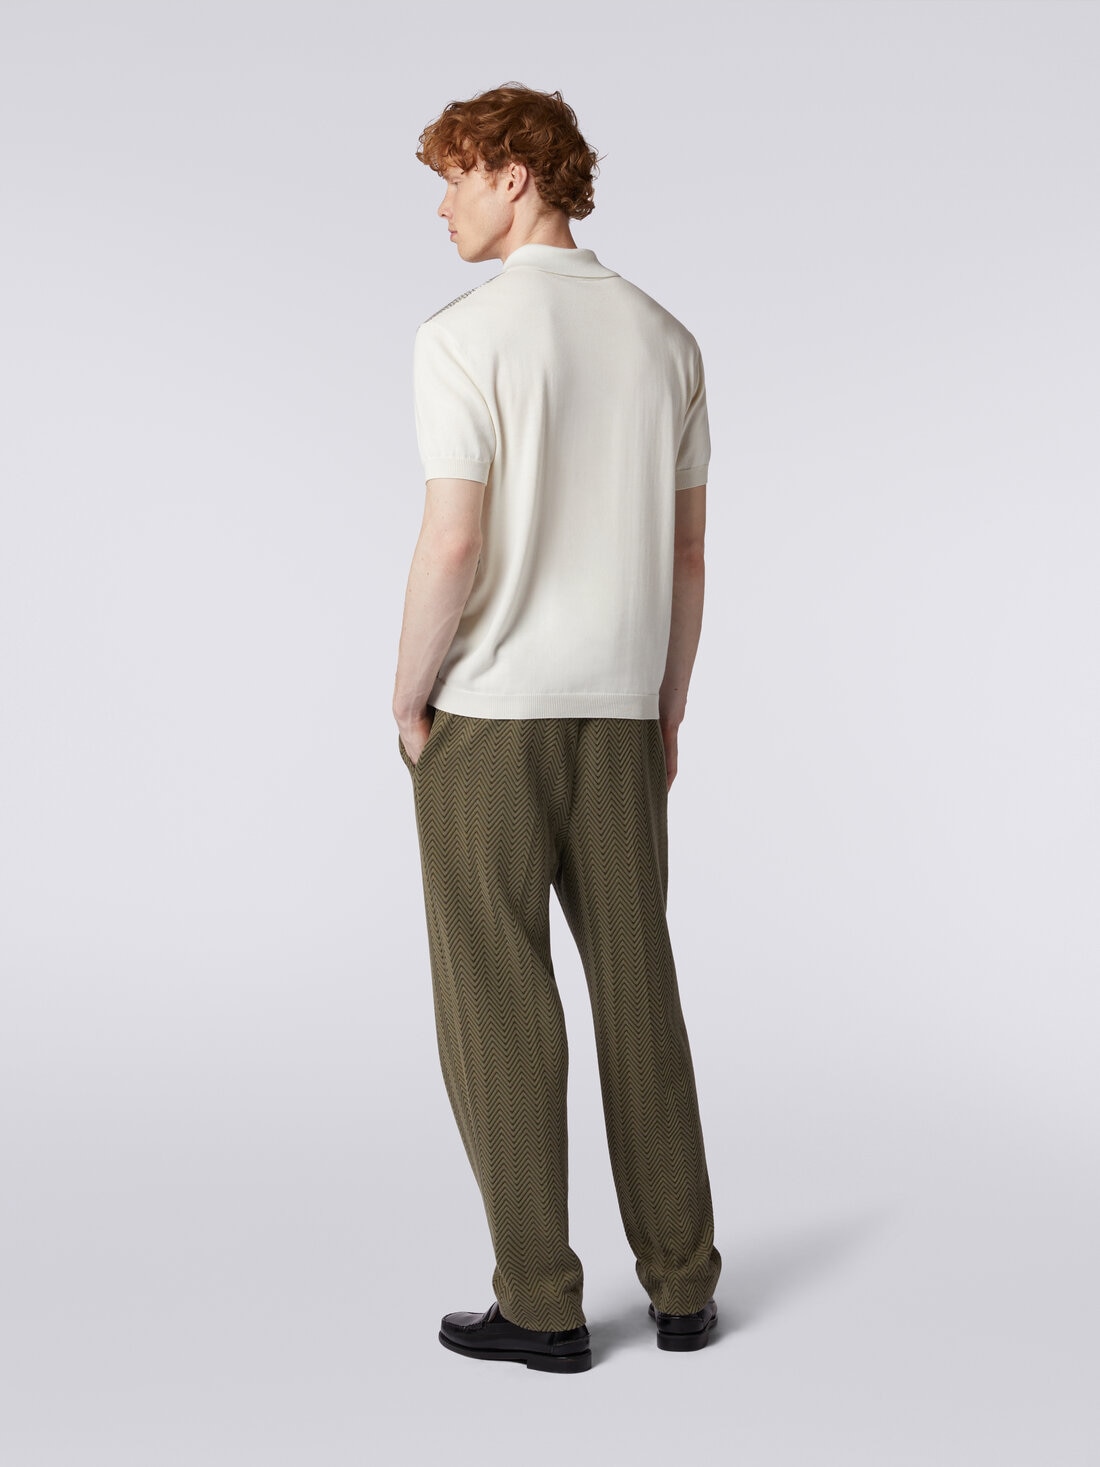 Pantalones clásicos de algodón y viscosa zigzag Verde | Missoni